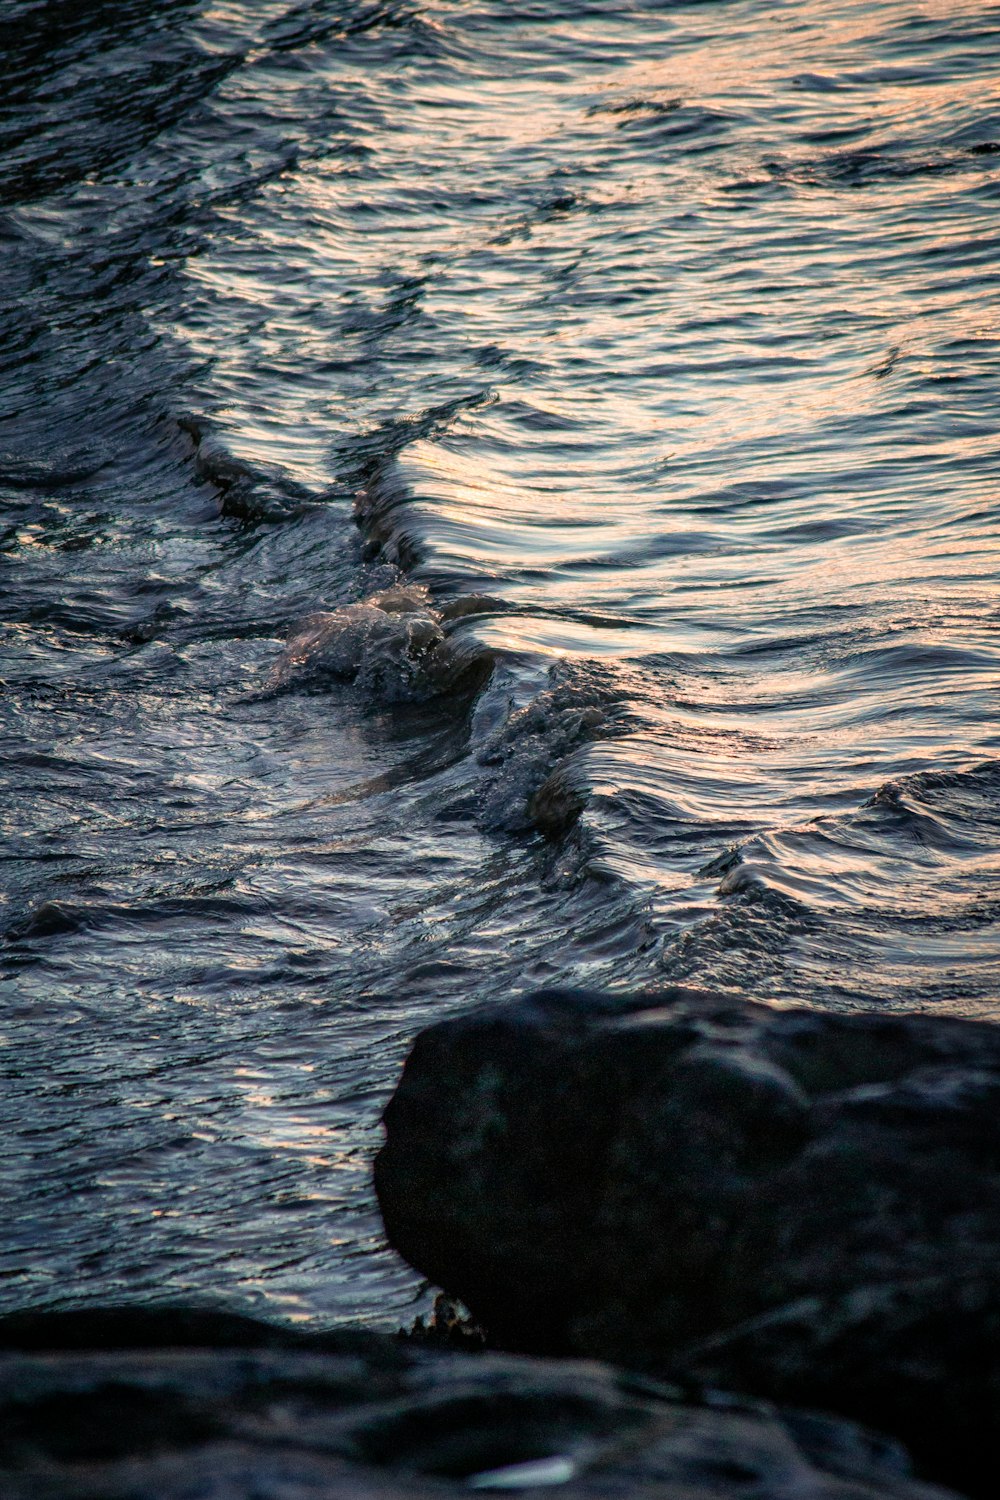 water waves hitting black rock